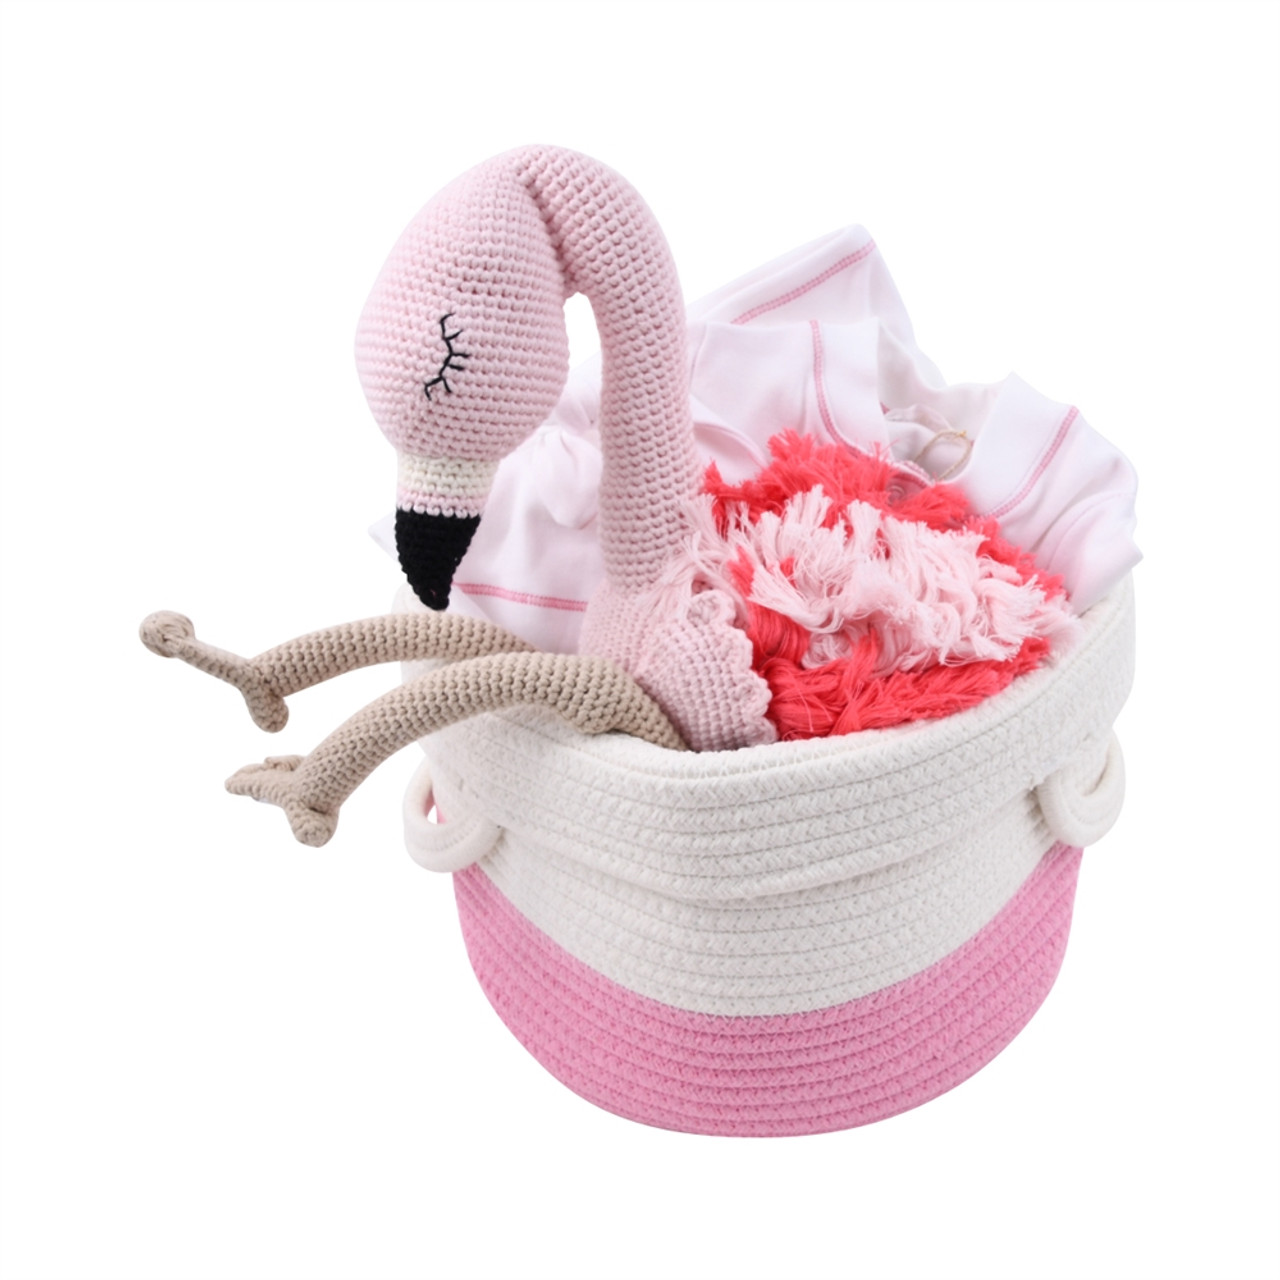 Tickled Pink Teacher Gift Idea - Spot of Tea Designs